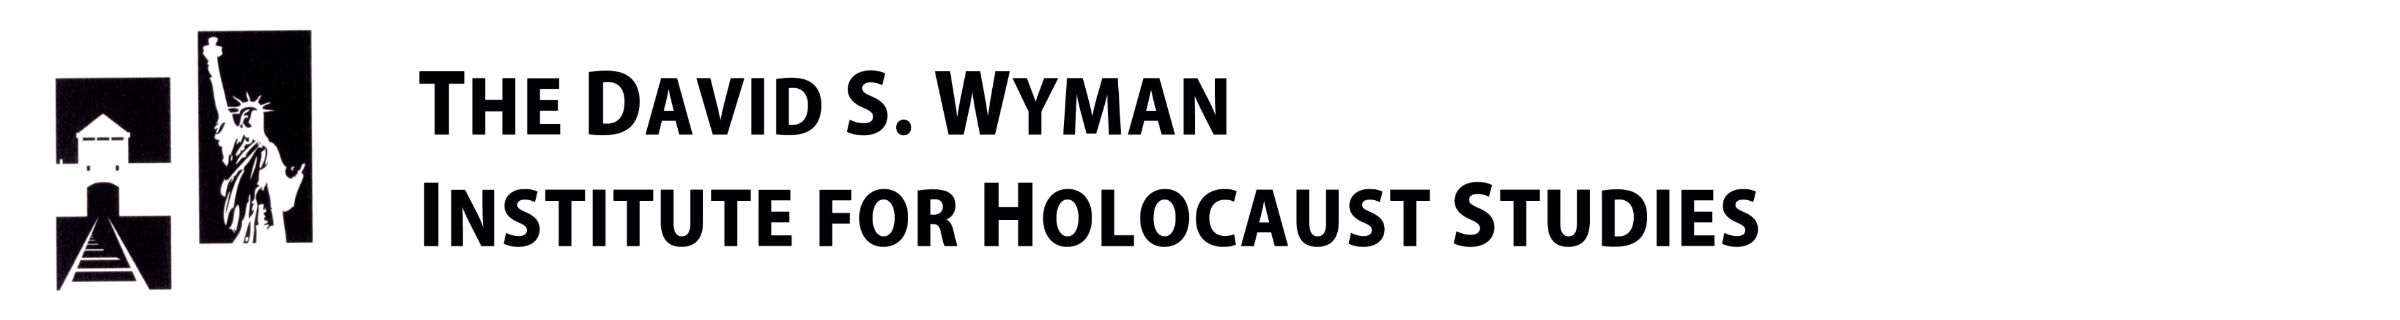 The David S. Wyman Institute for Holocaust Studies